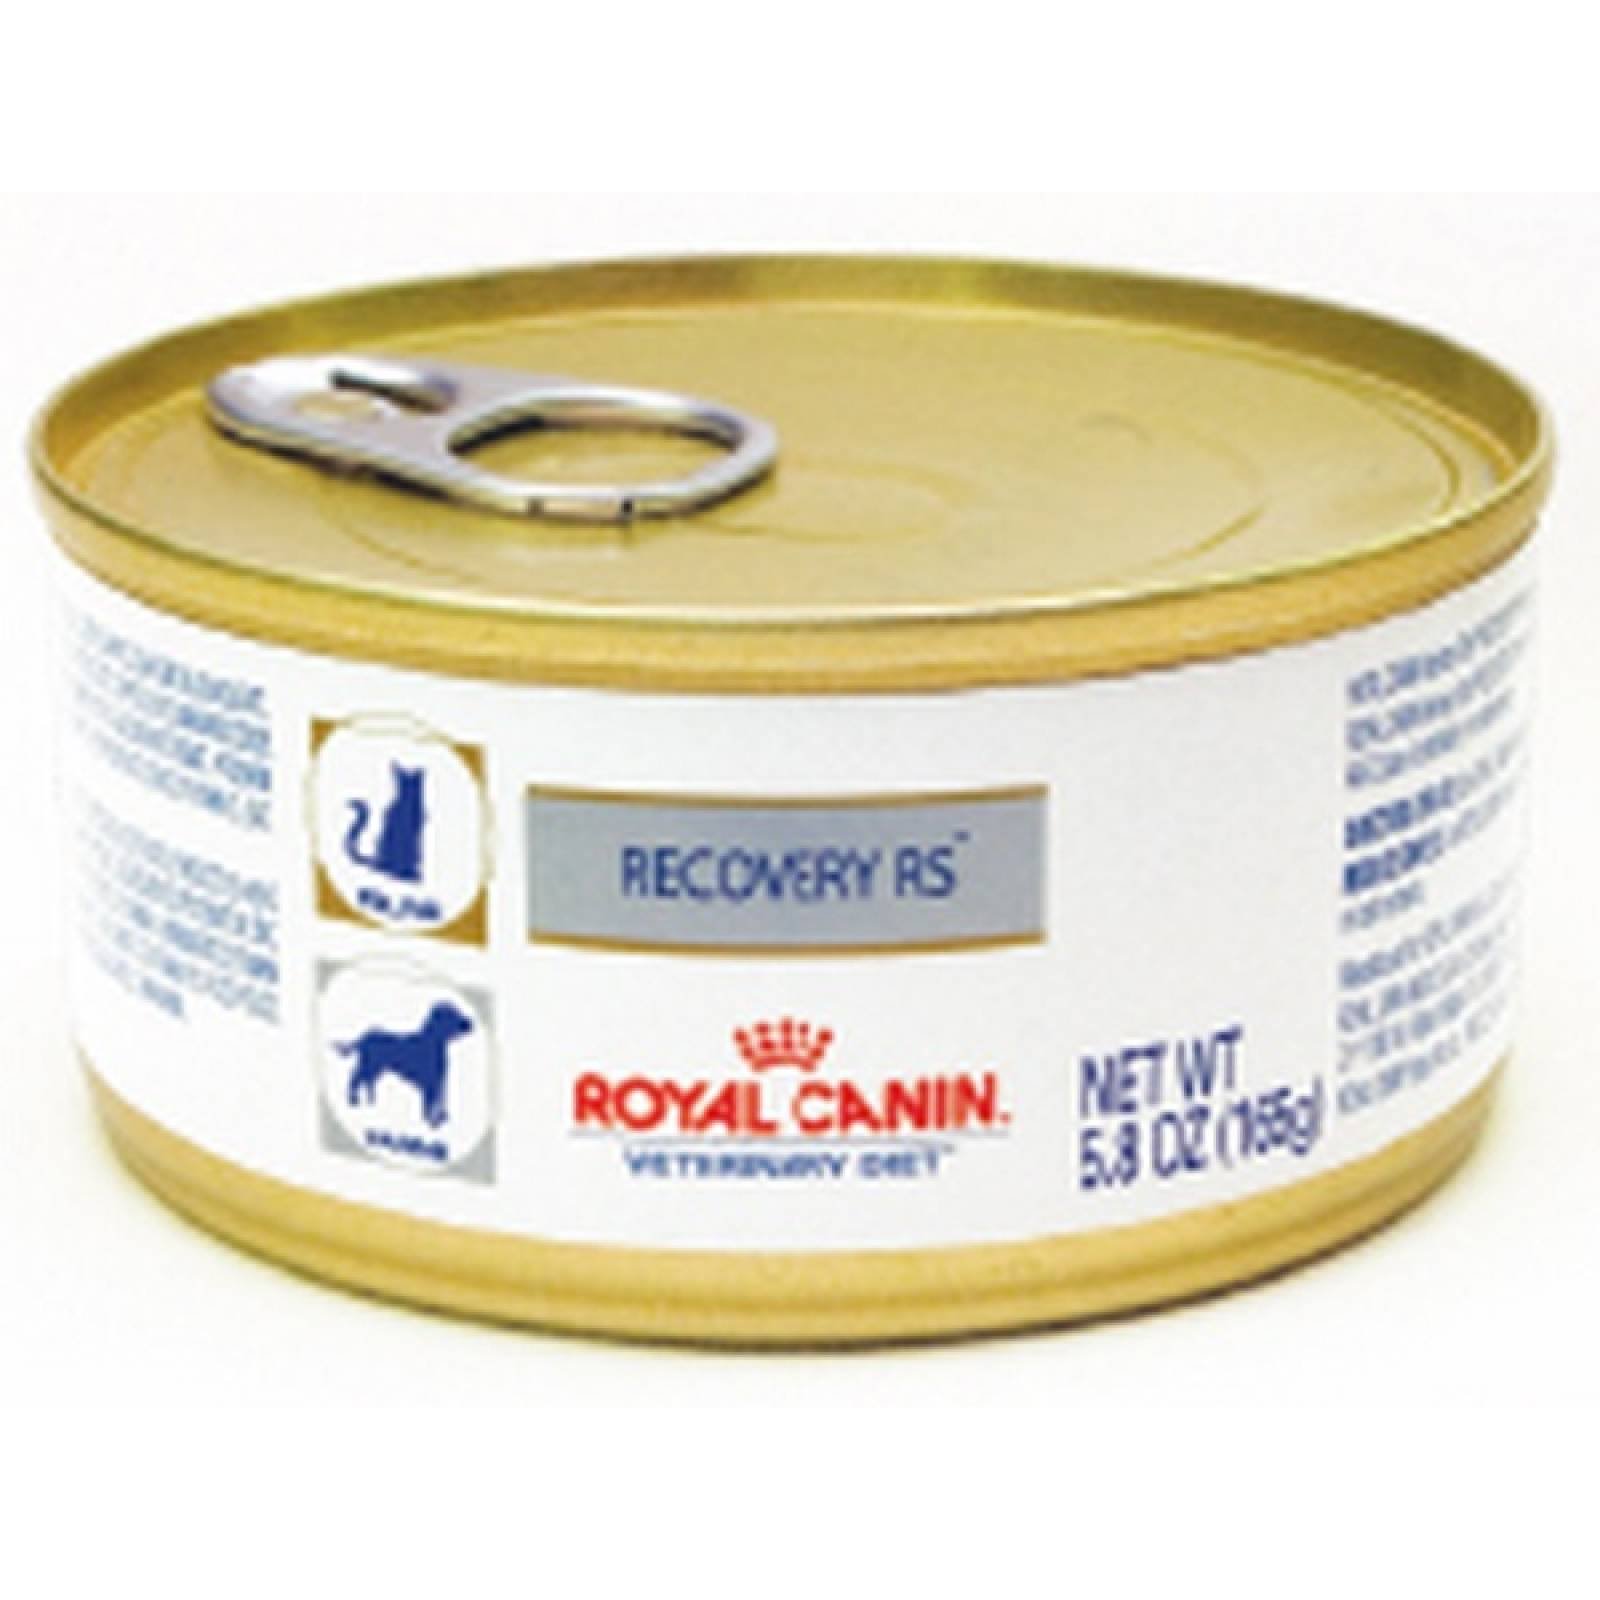 Royal Canin Dieta Veterinaria Alimento Humedo Cuidados intensivos y convalecencia Perro/Gato lata 165g